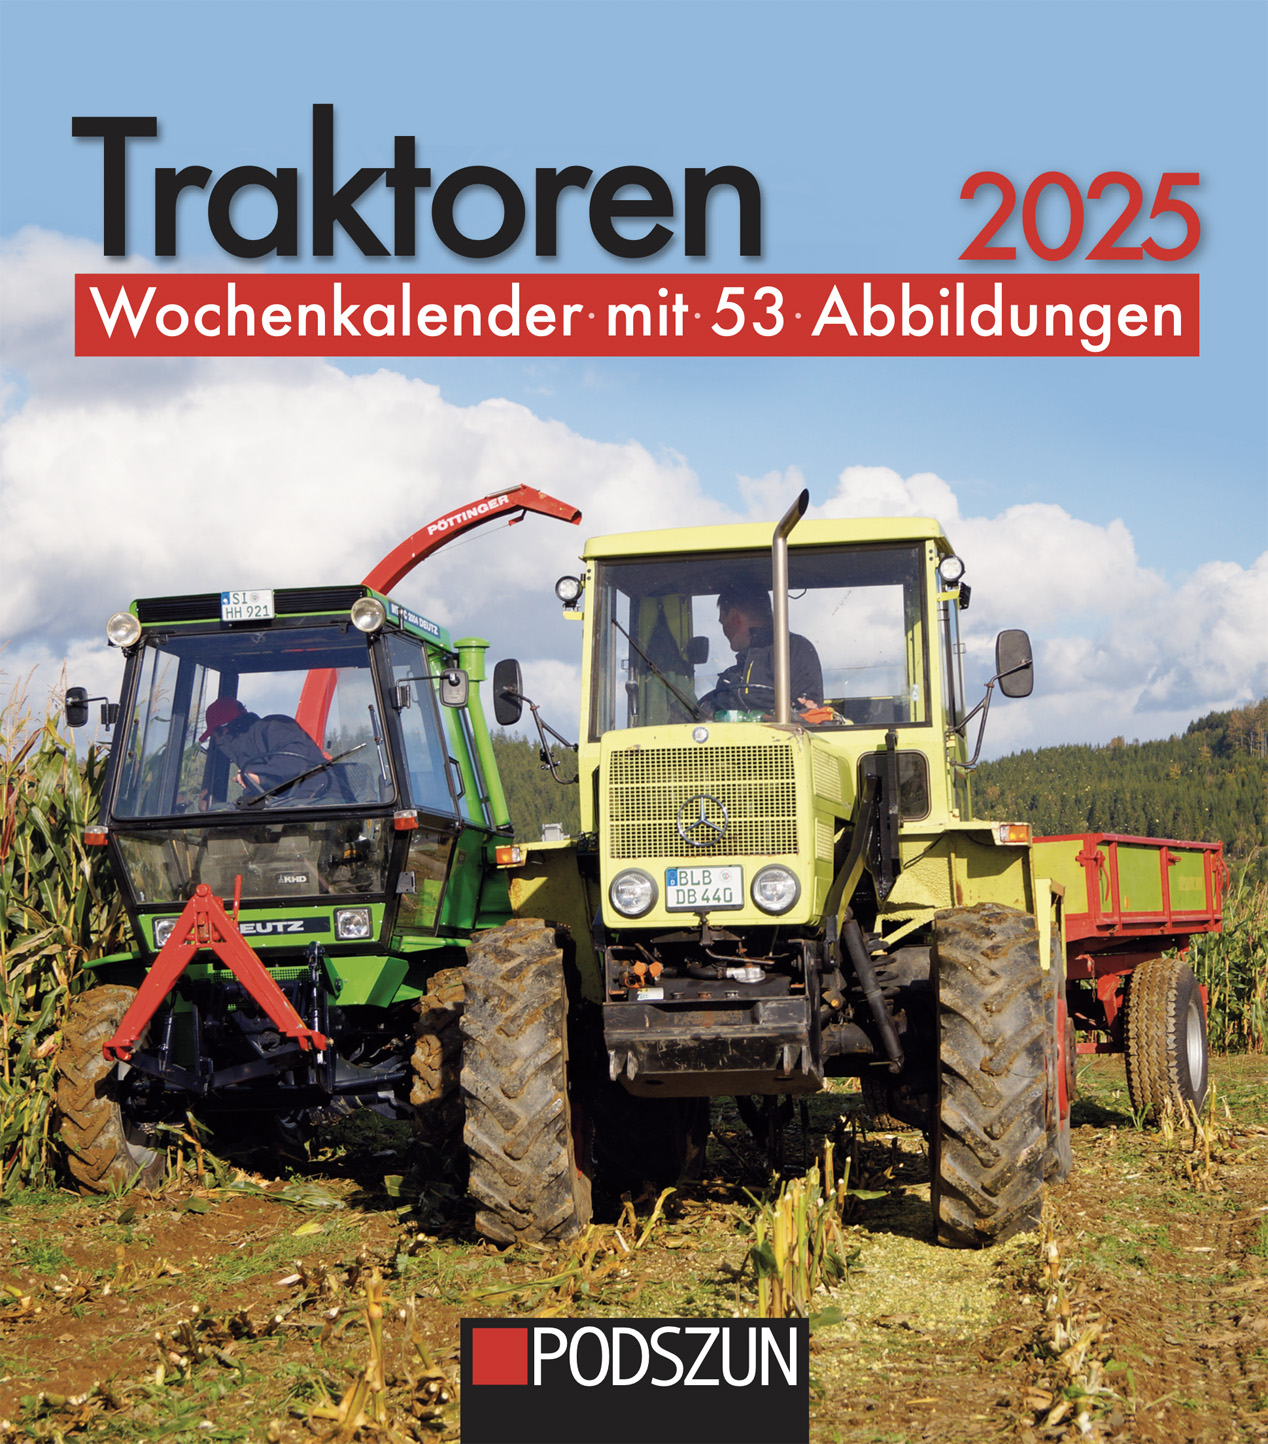 Traktoren 2025